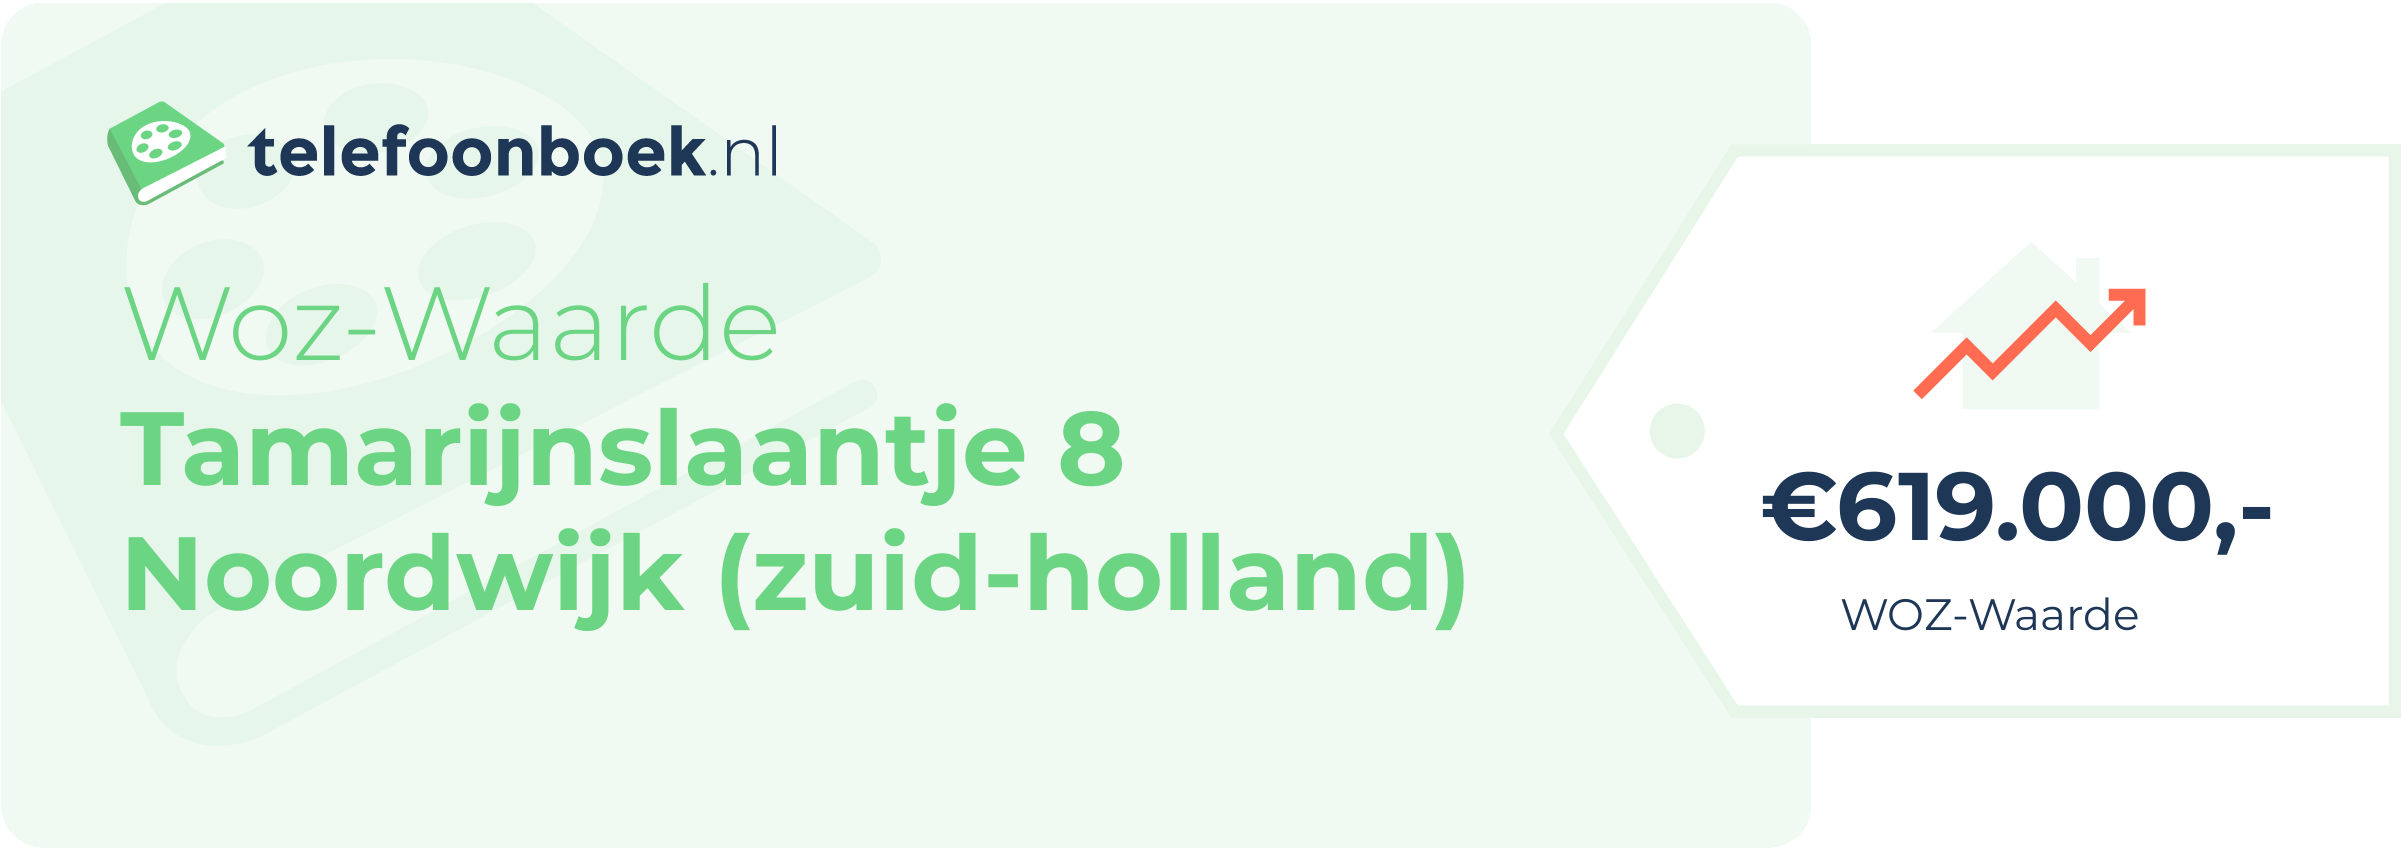 WOZ-waarde Tamarijnslaantje 8 Noordwijk (Zuid-Holland)